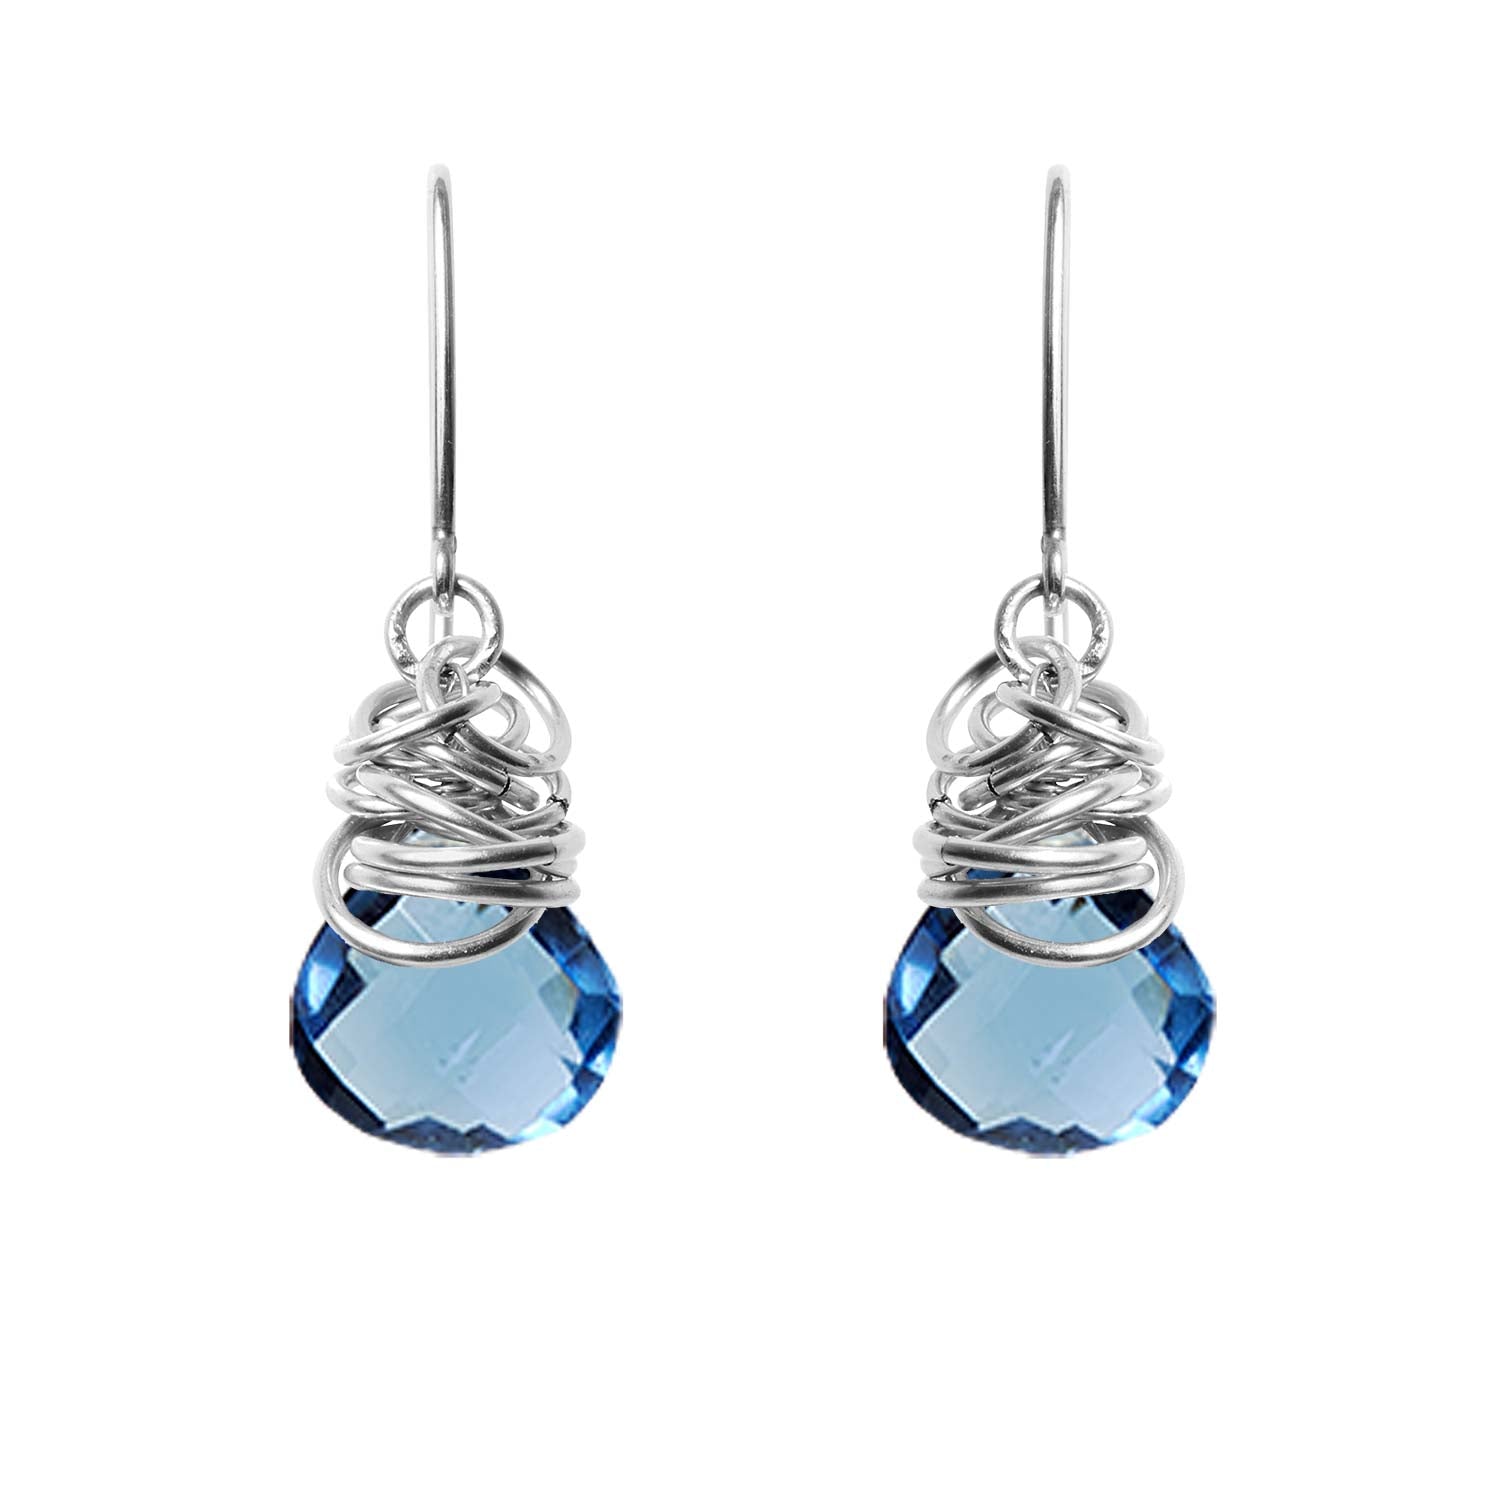 Sterling silver London Blue Topaz earrings, Sterling silver London Blue Topaz gemstone earrings, Sterling silver London Blue Topaz birthstone earrings